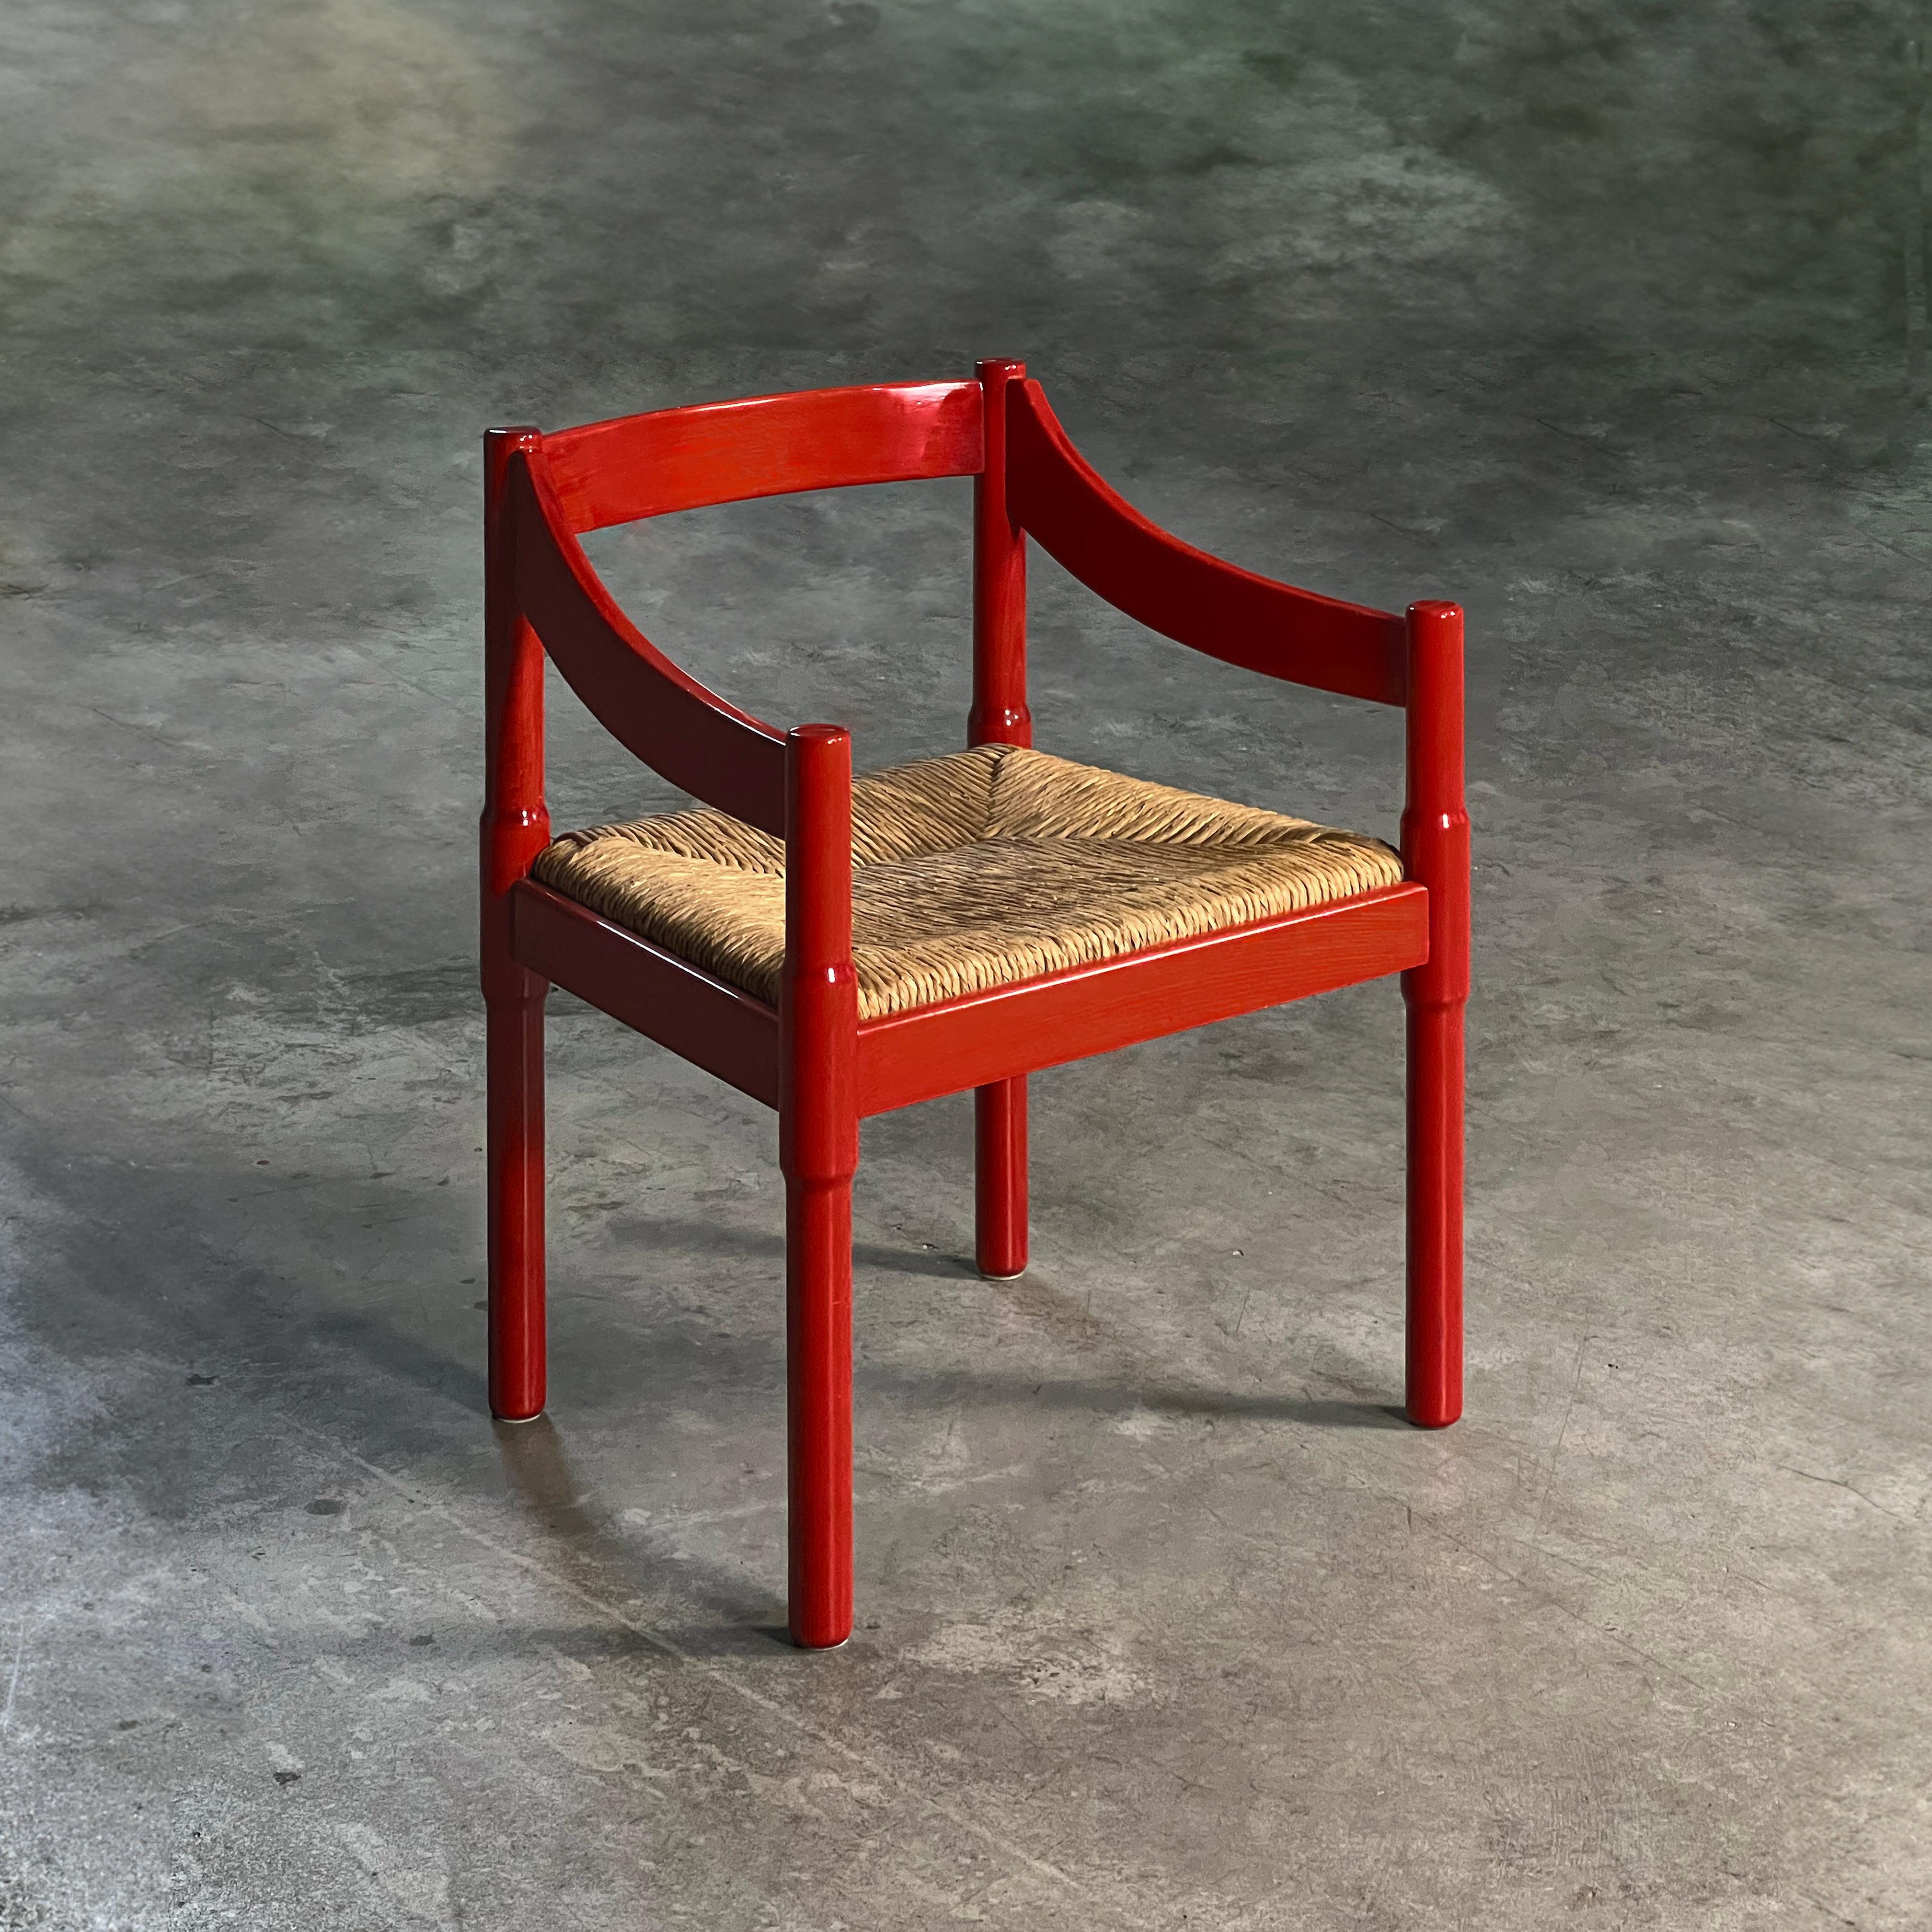 Roter Carimate-Stuhl von Vico Magistretti, Italien 1960er Jahre

Sehen Sie sich den fesselnden Stuhl Carimate an, ein Meisterwerk aus massiver, rot gebeizter Buche, das von dem visionären Architekten und Designer Vico Magistretti zum Leben erweckt